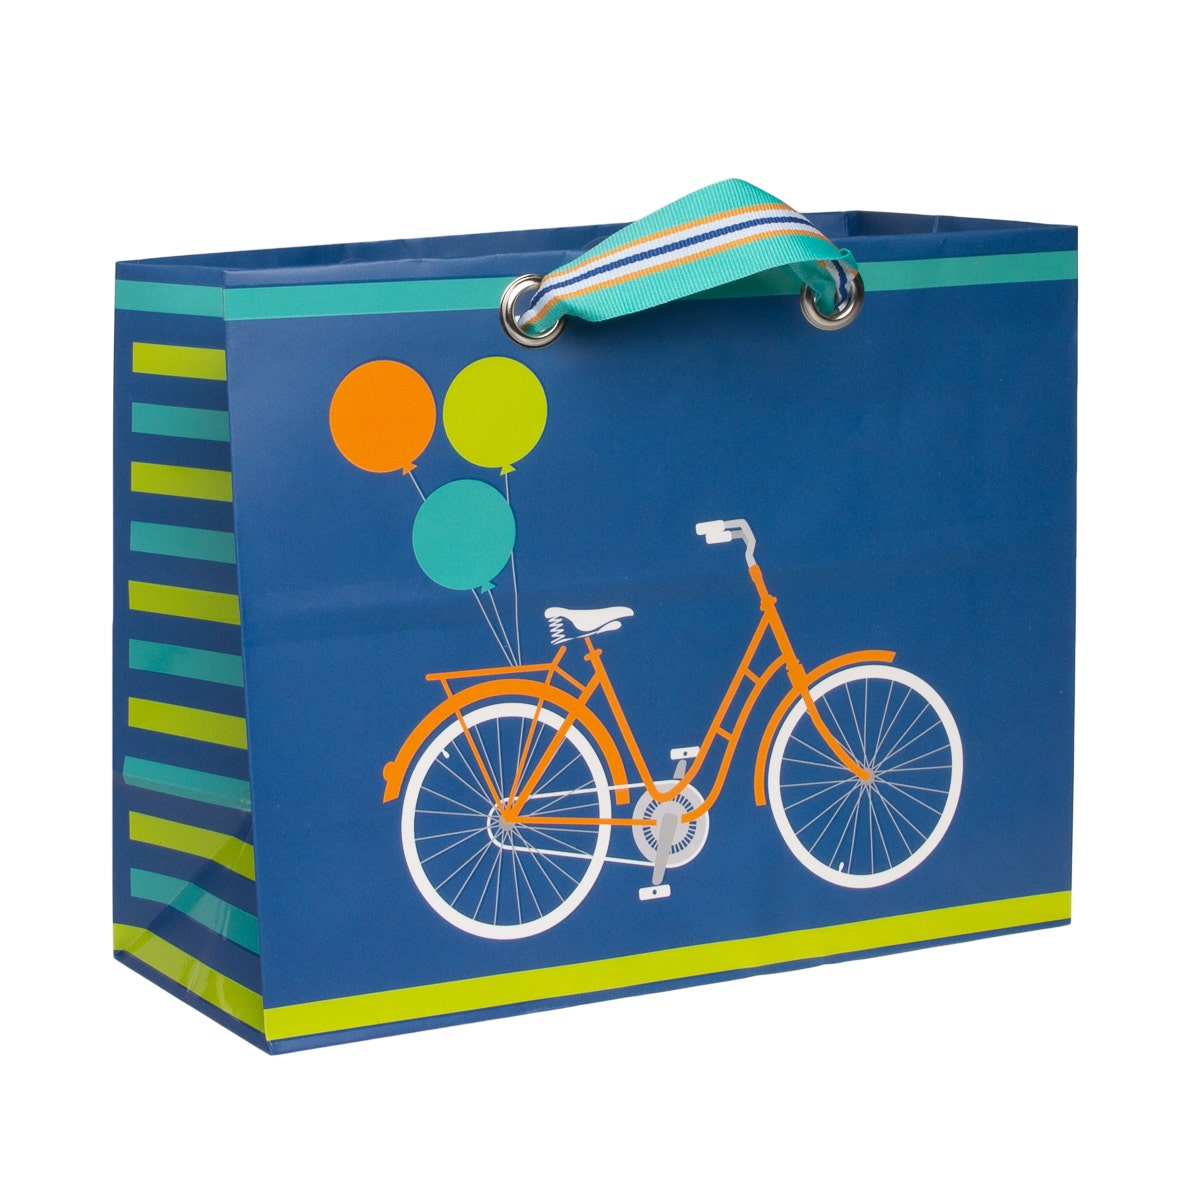 Hallmark 9.5" Horizontal Gift Bag – Bicycle Image Birthday & Fun